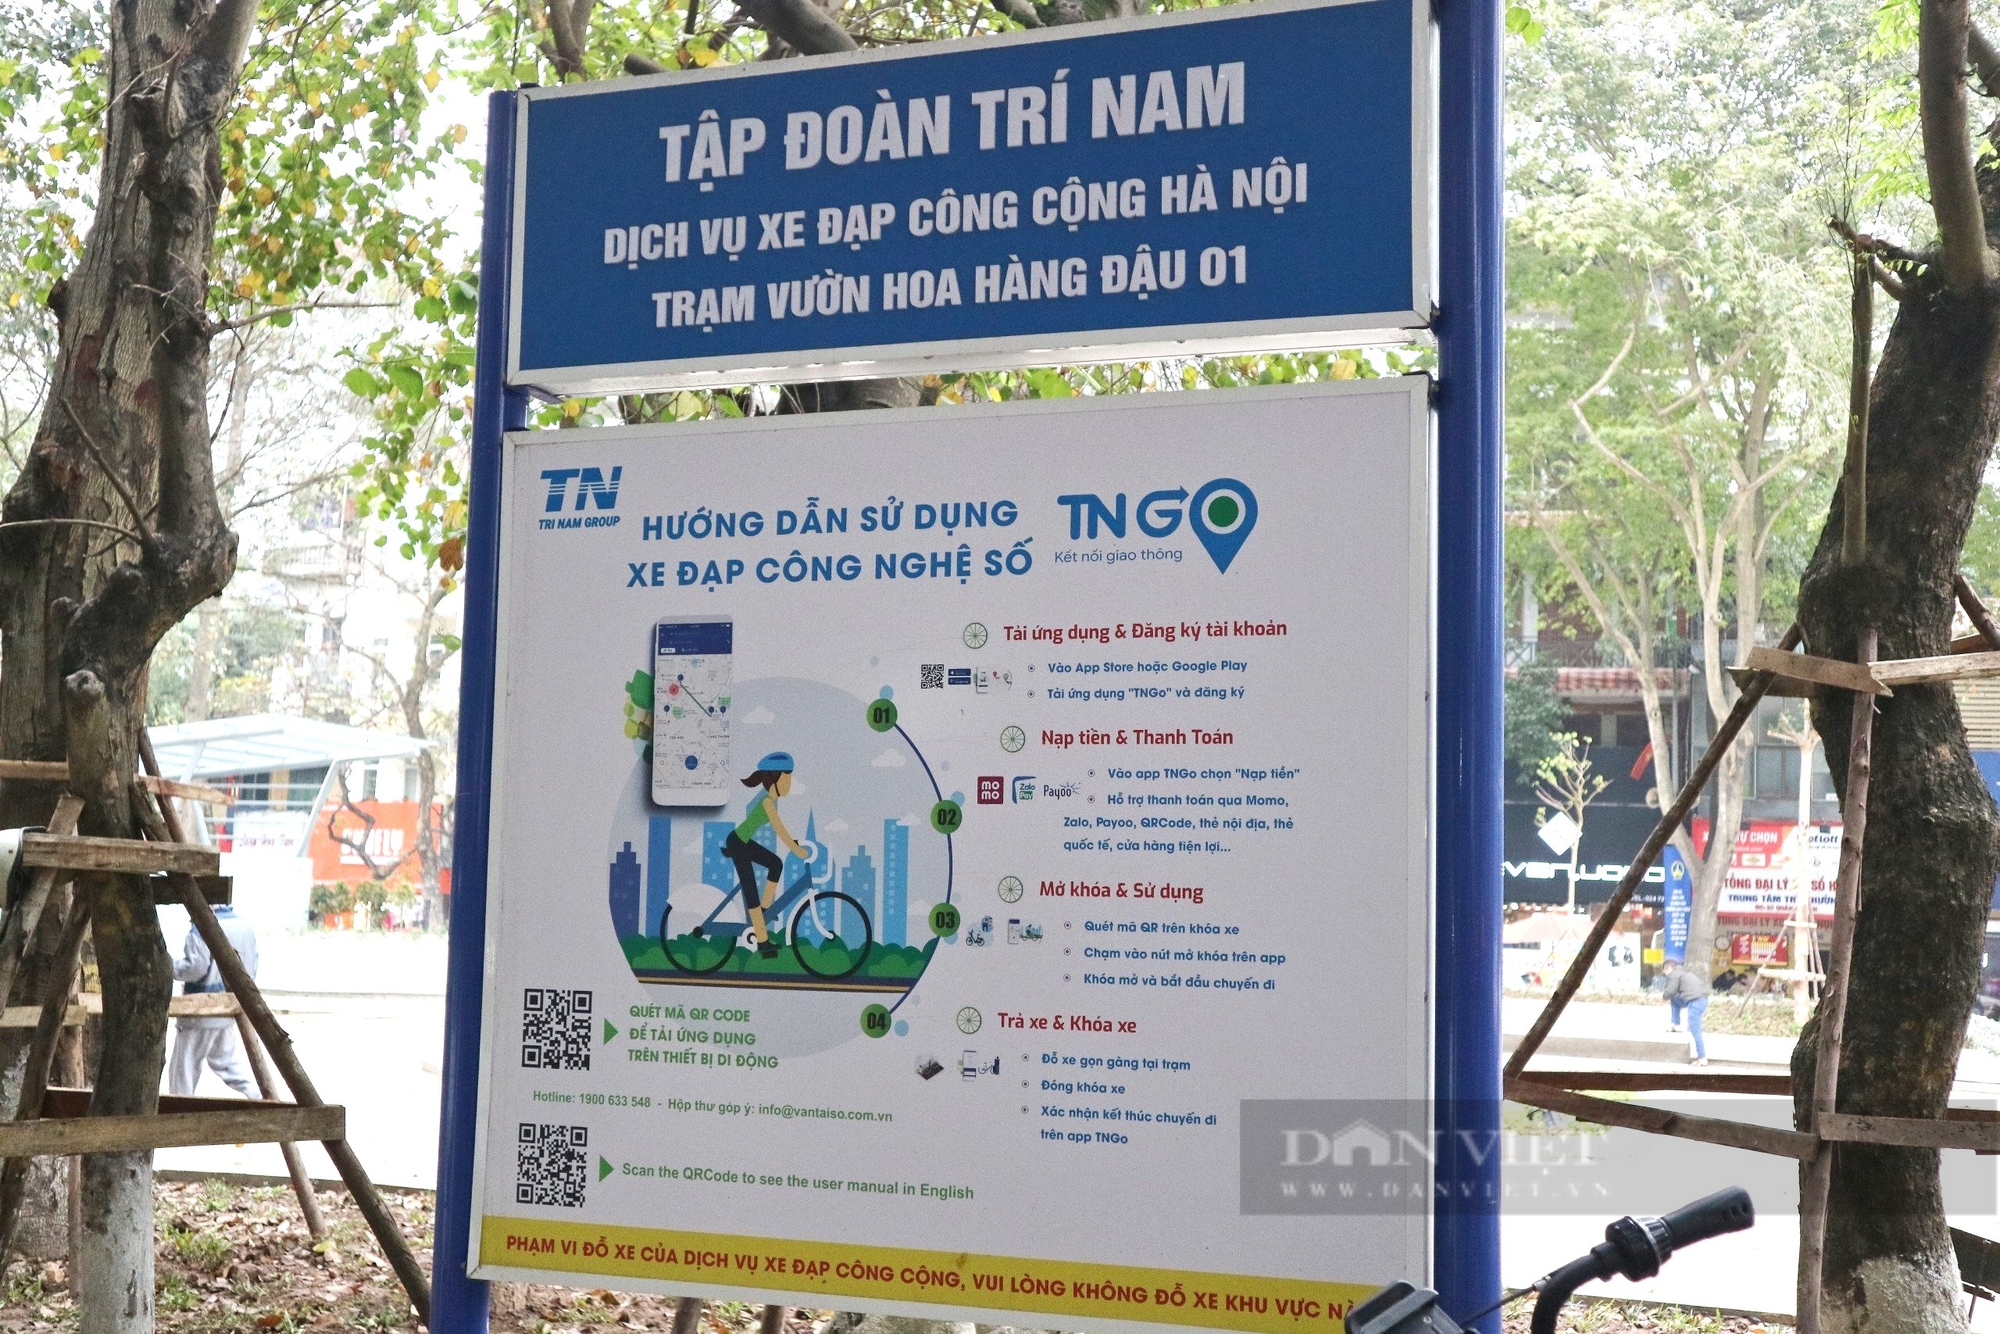 Dịch vụ xe đạp công cộng Hà Nội được người dân sử dụng gần 1.150 lượt/ngày - Ảnh 5.